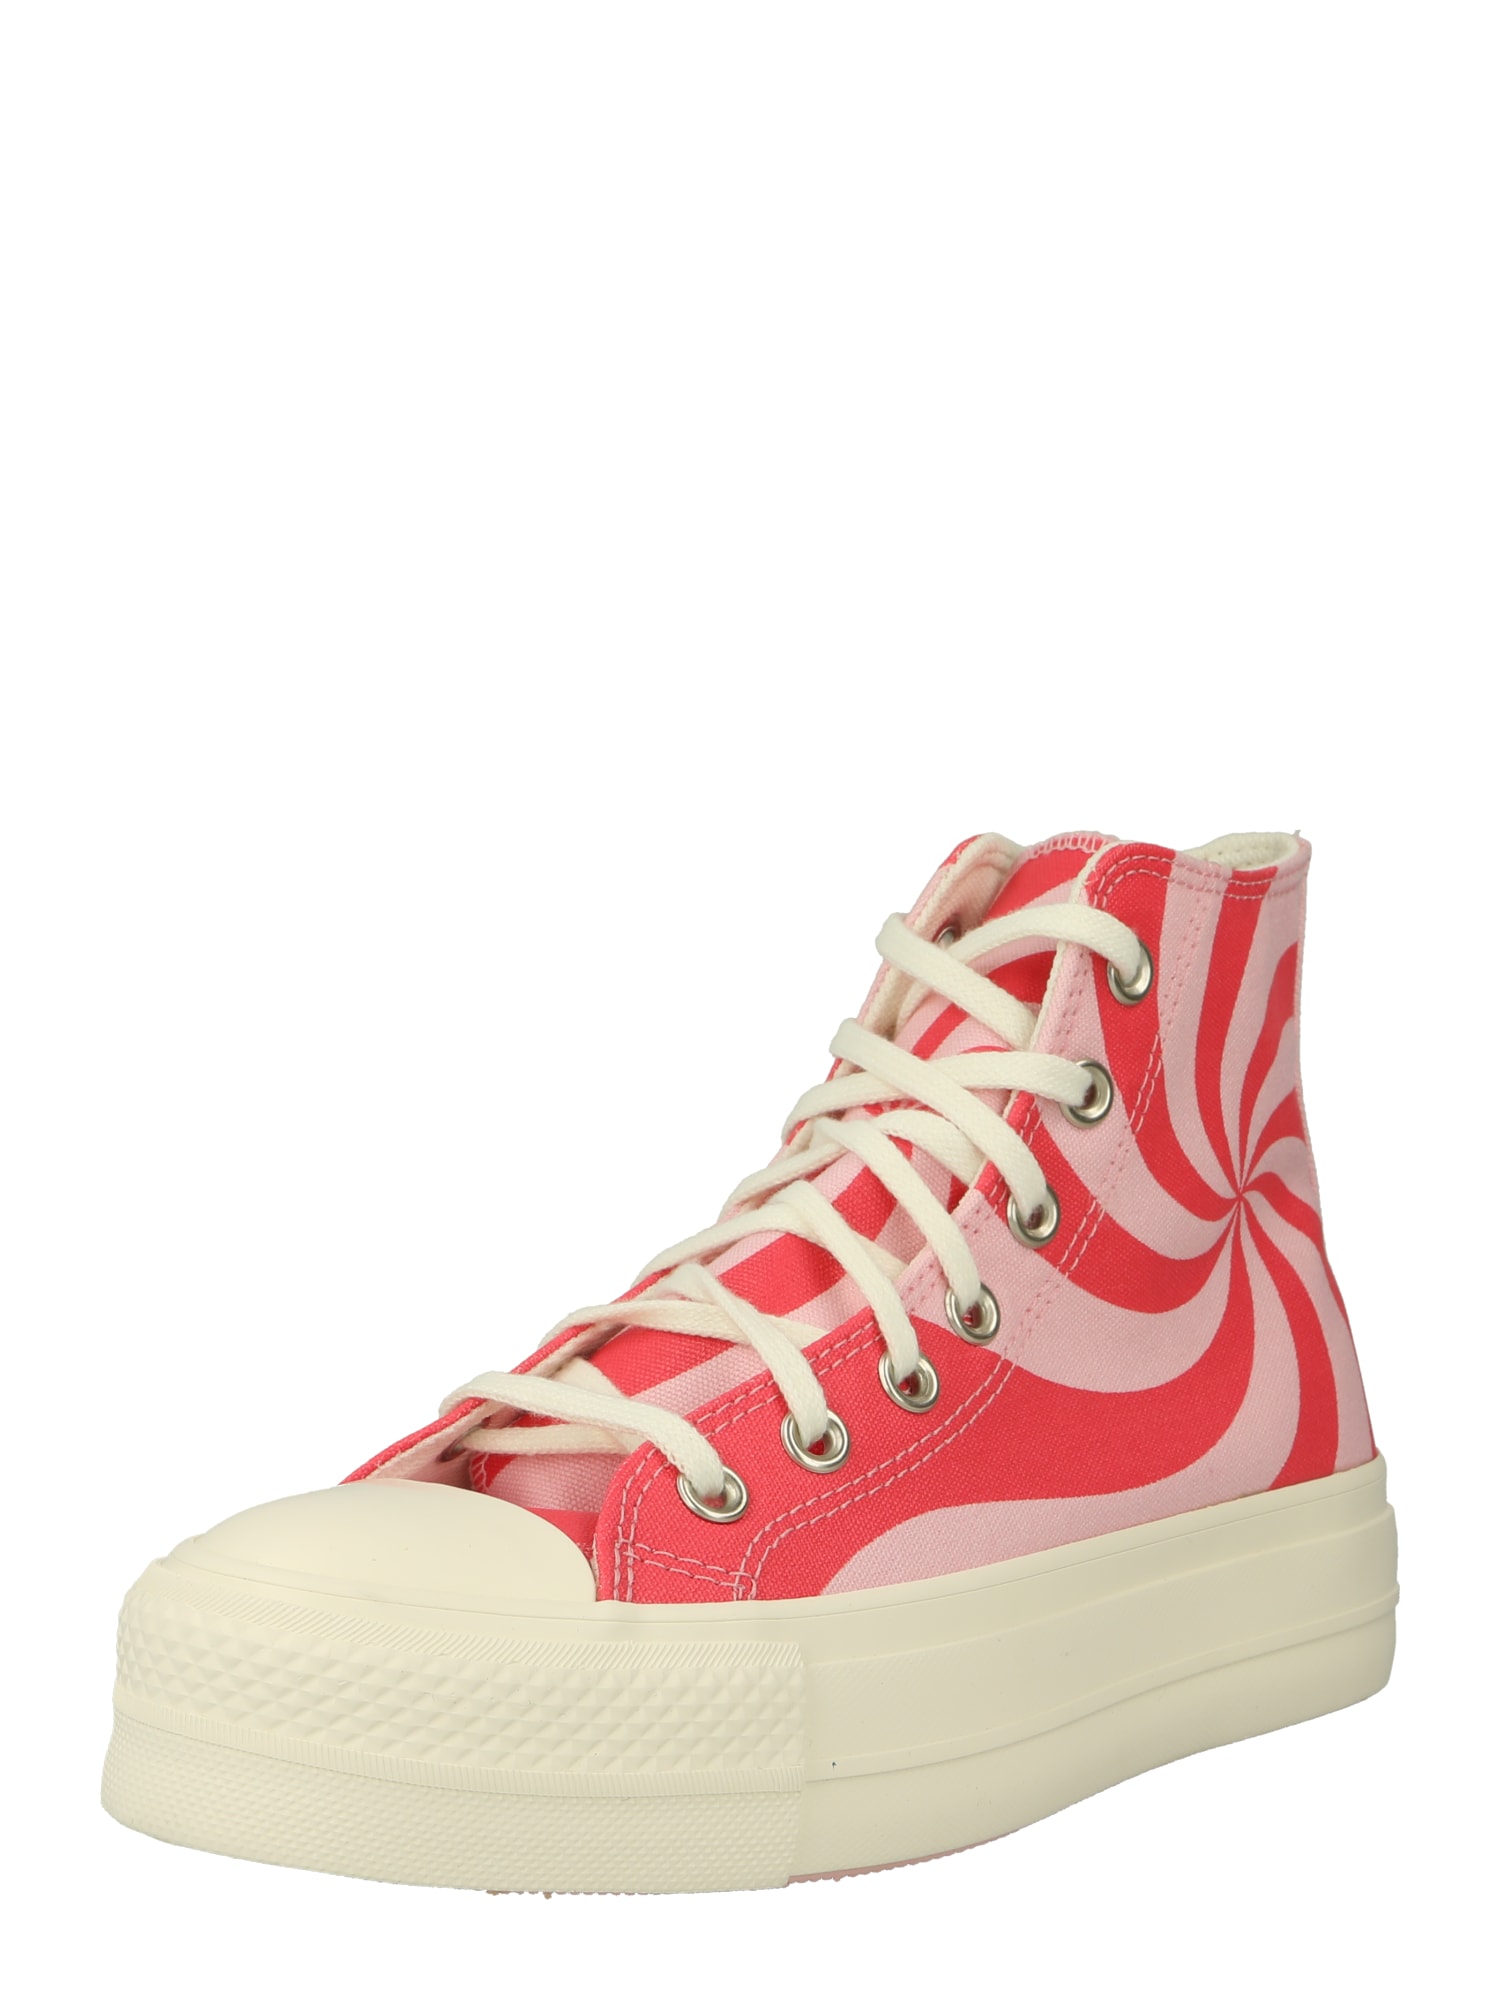 Converse CONVERSE Sneaker 'Chuck Taylor All Star Lift' ecru / pink / rot